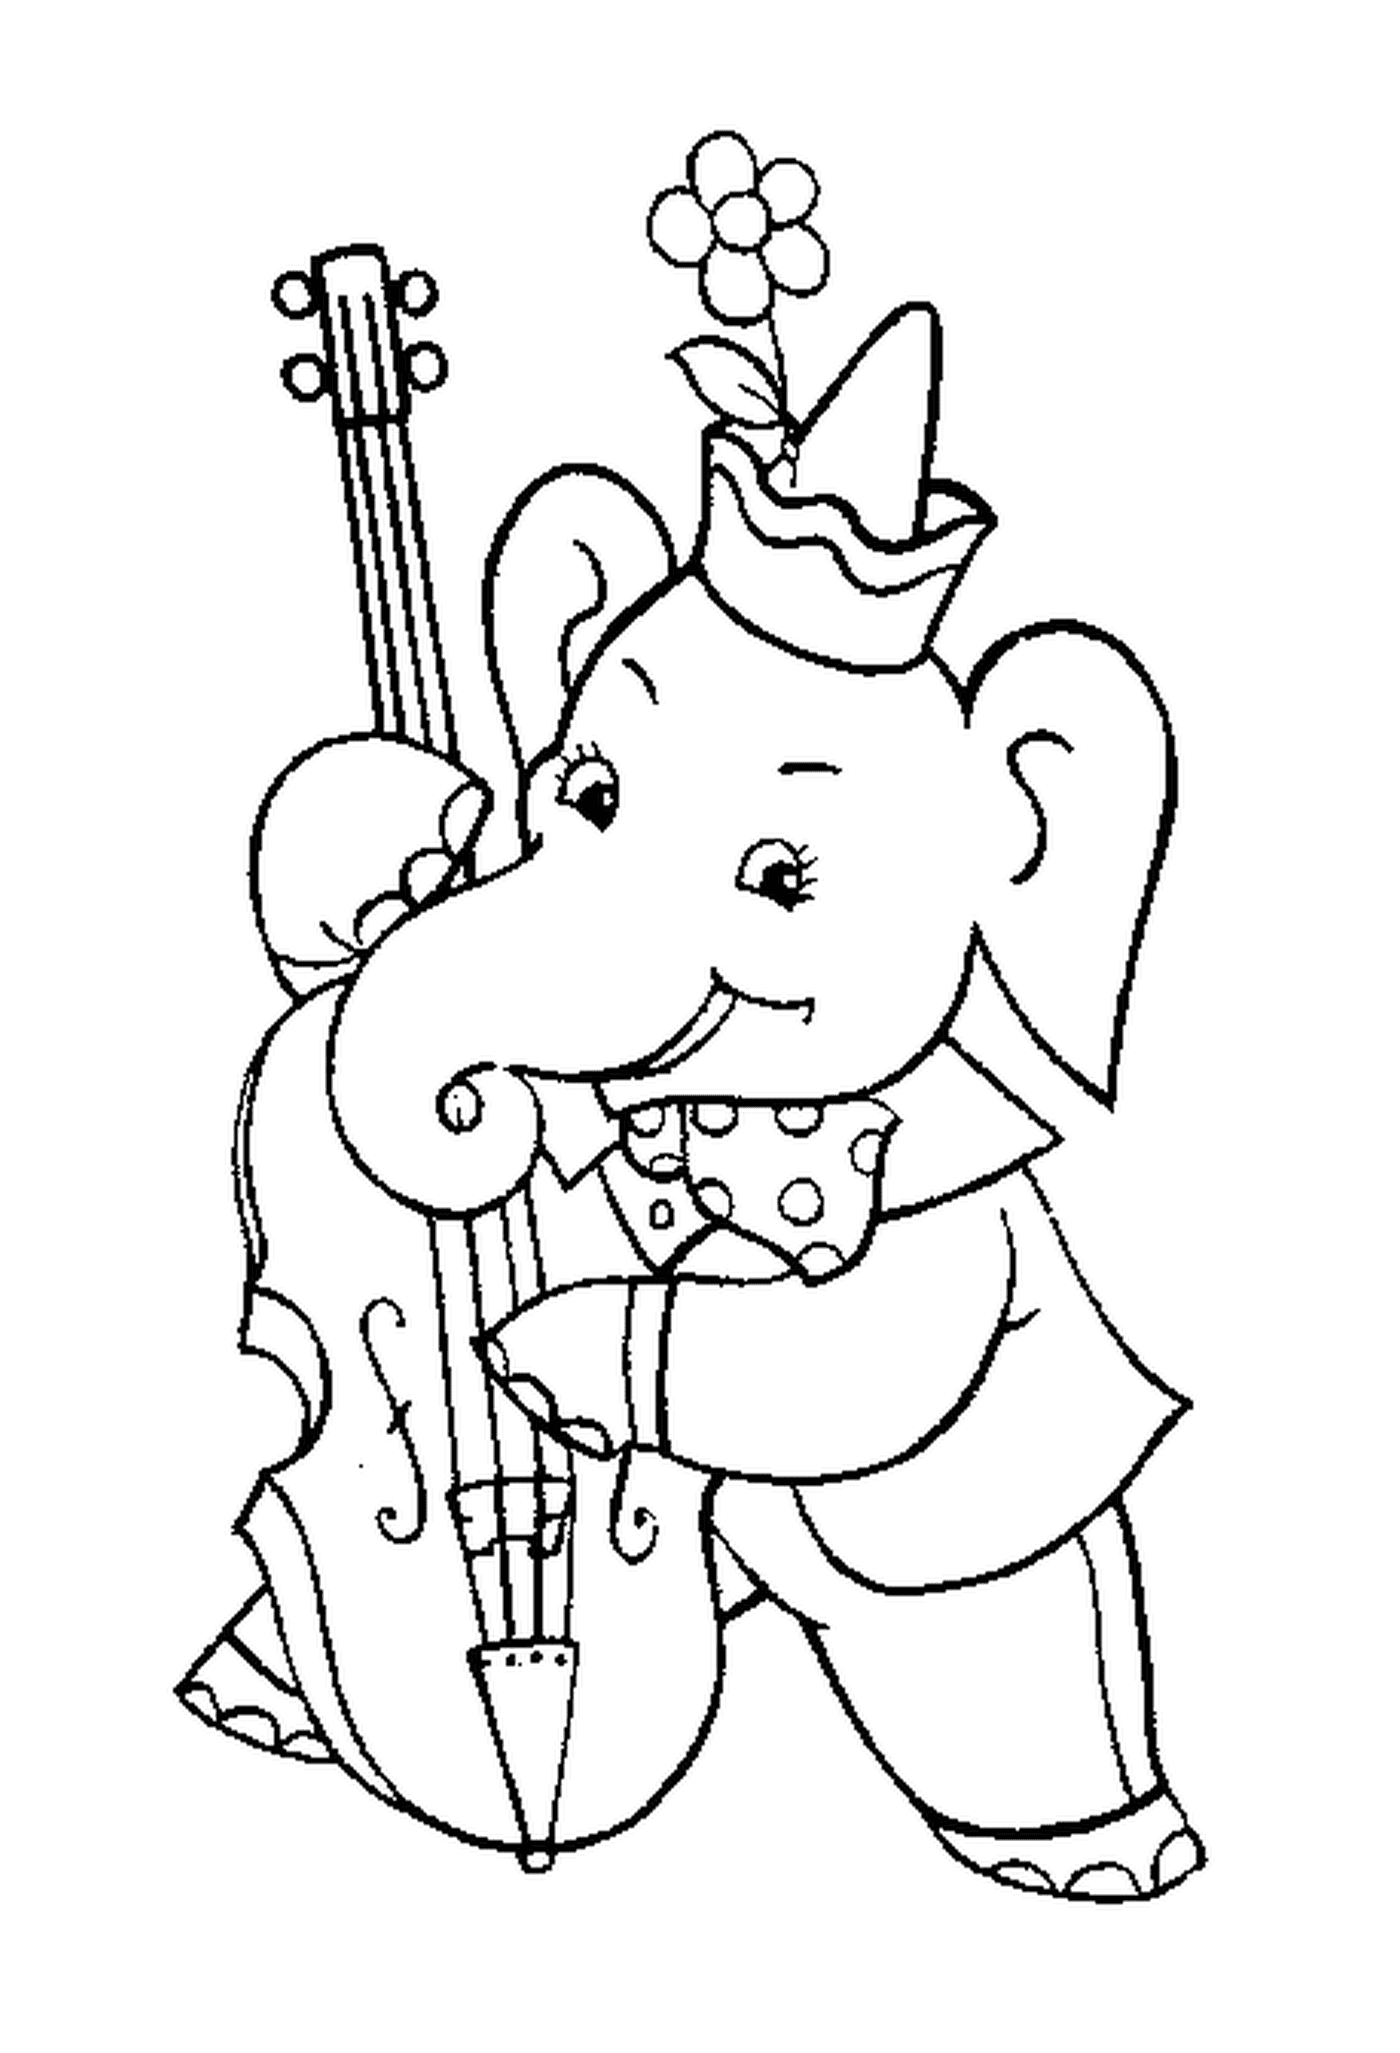  हाथी कक्षो खेलता है 